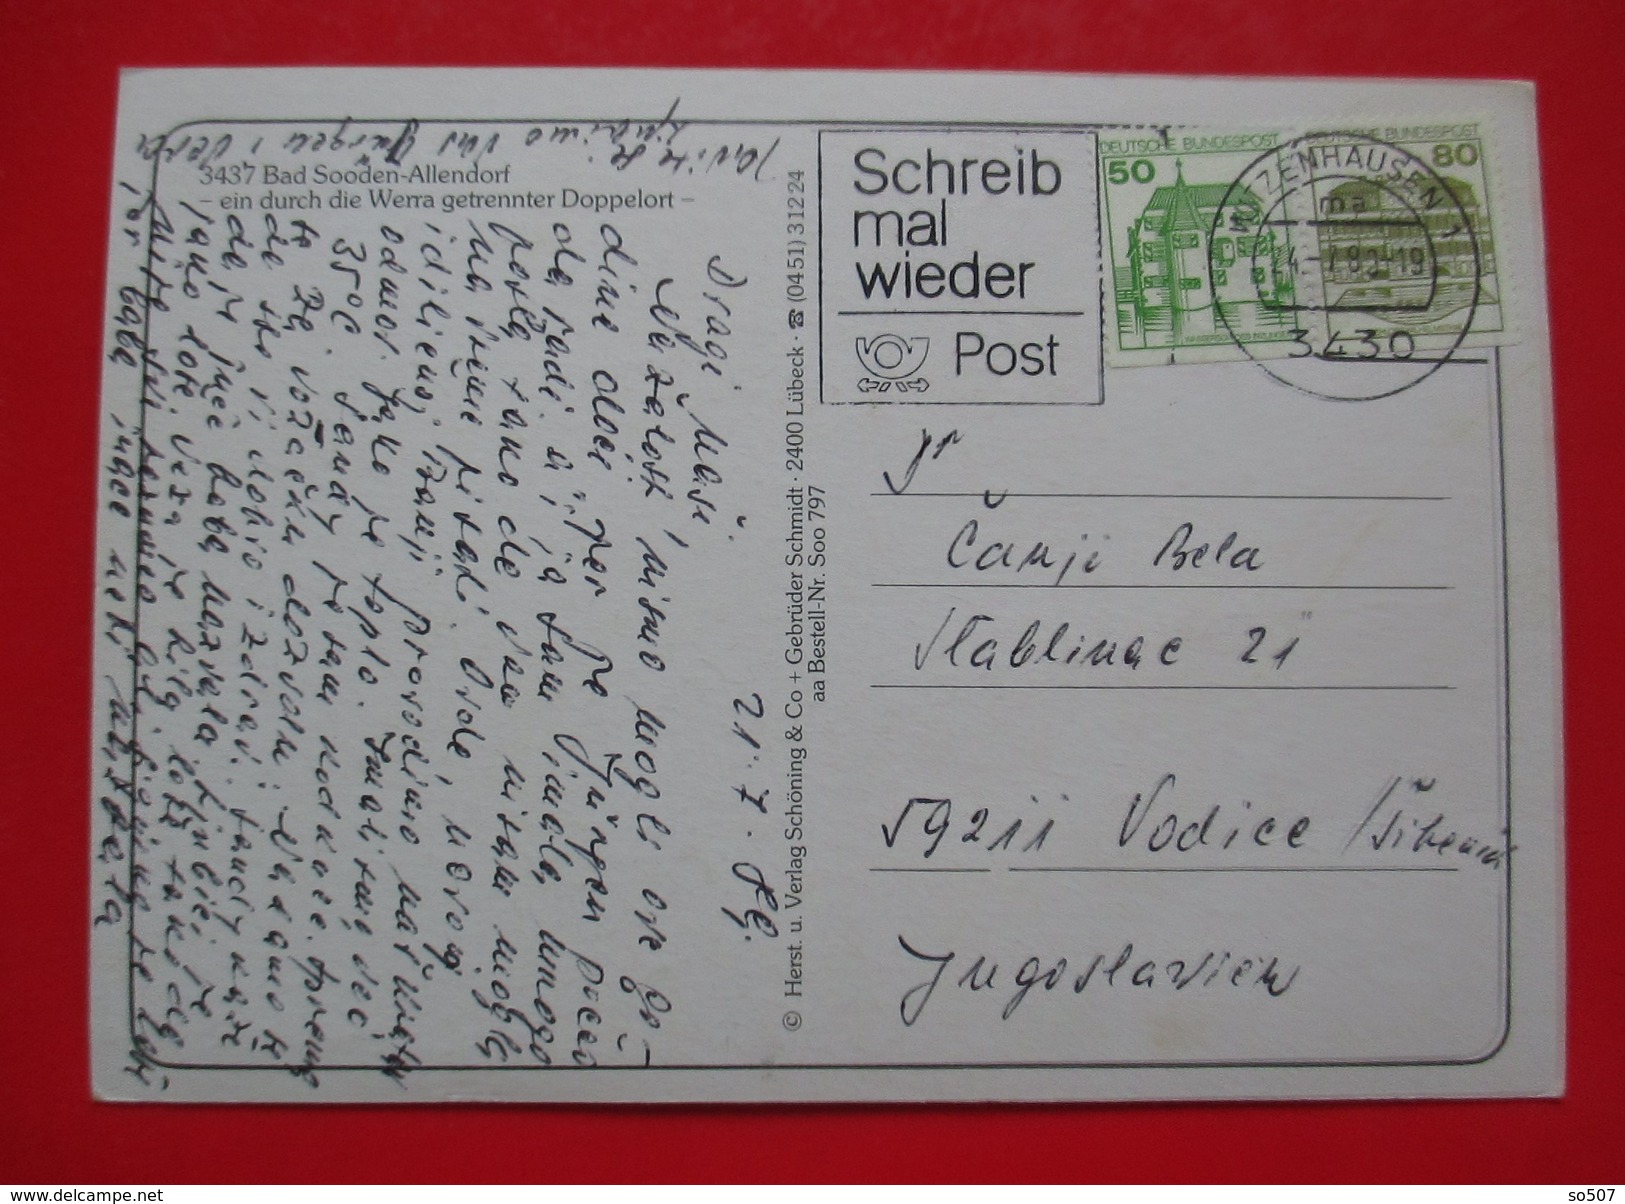 I1- Germany Postcard-Schwarzwald - Bad Sooden-Allendorf